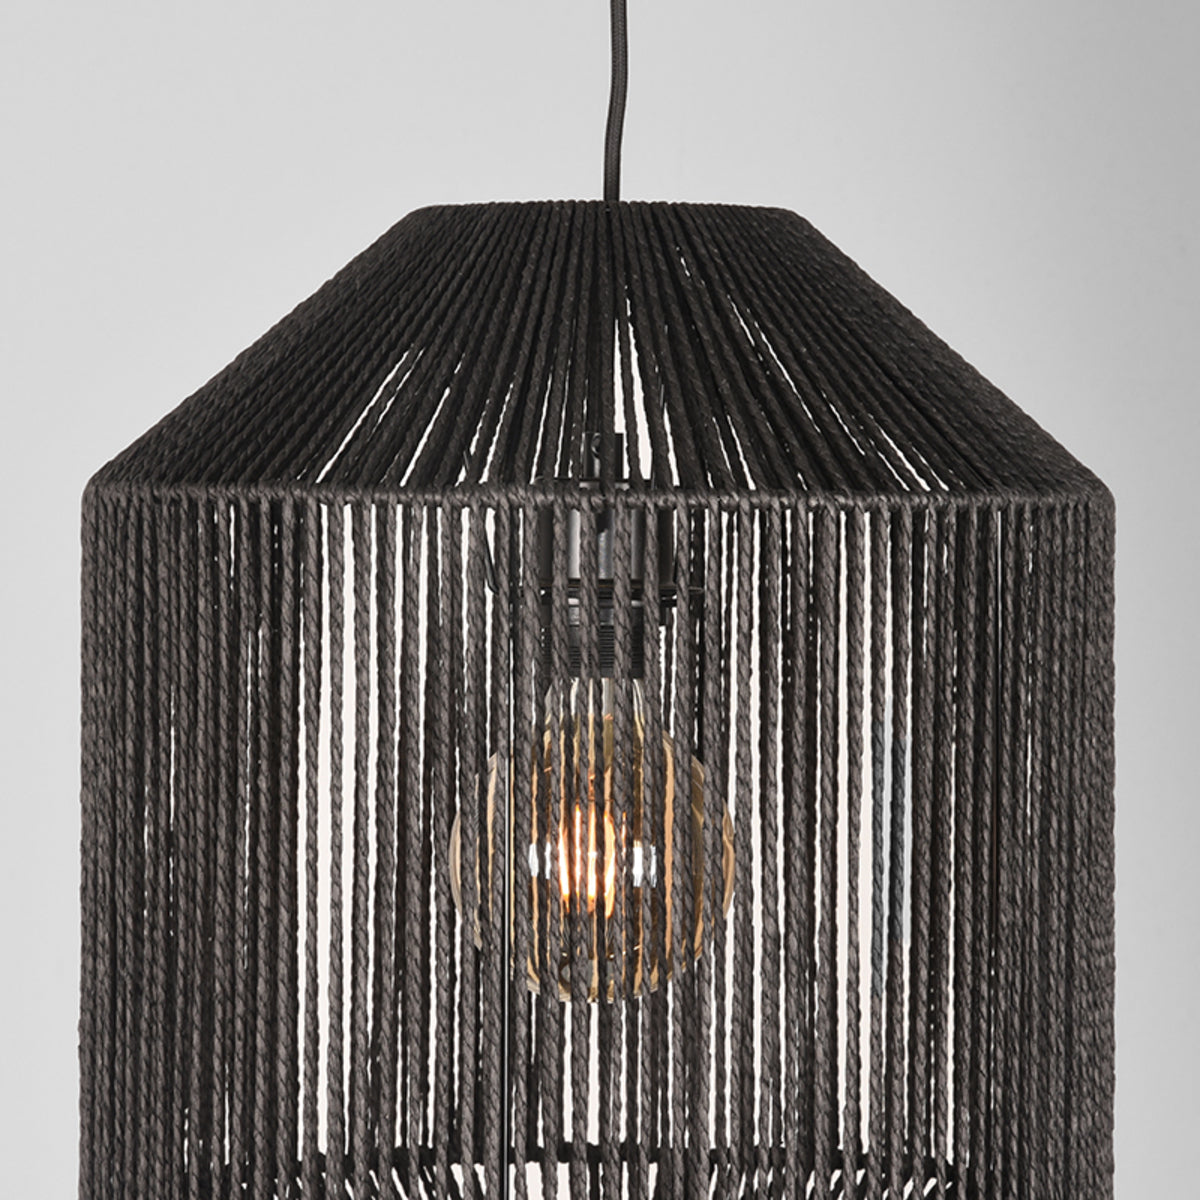 LABEL51 Hanging Lamp Ibiza - Black - Jute - 1-Light Cylinder